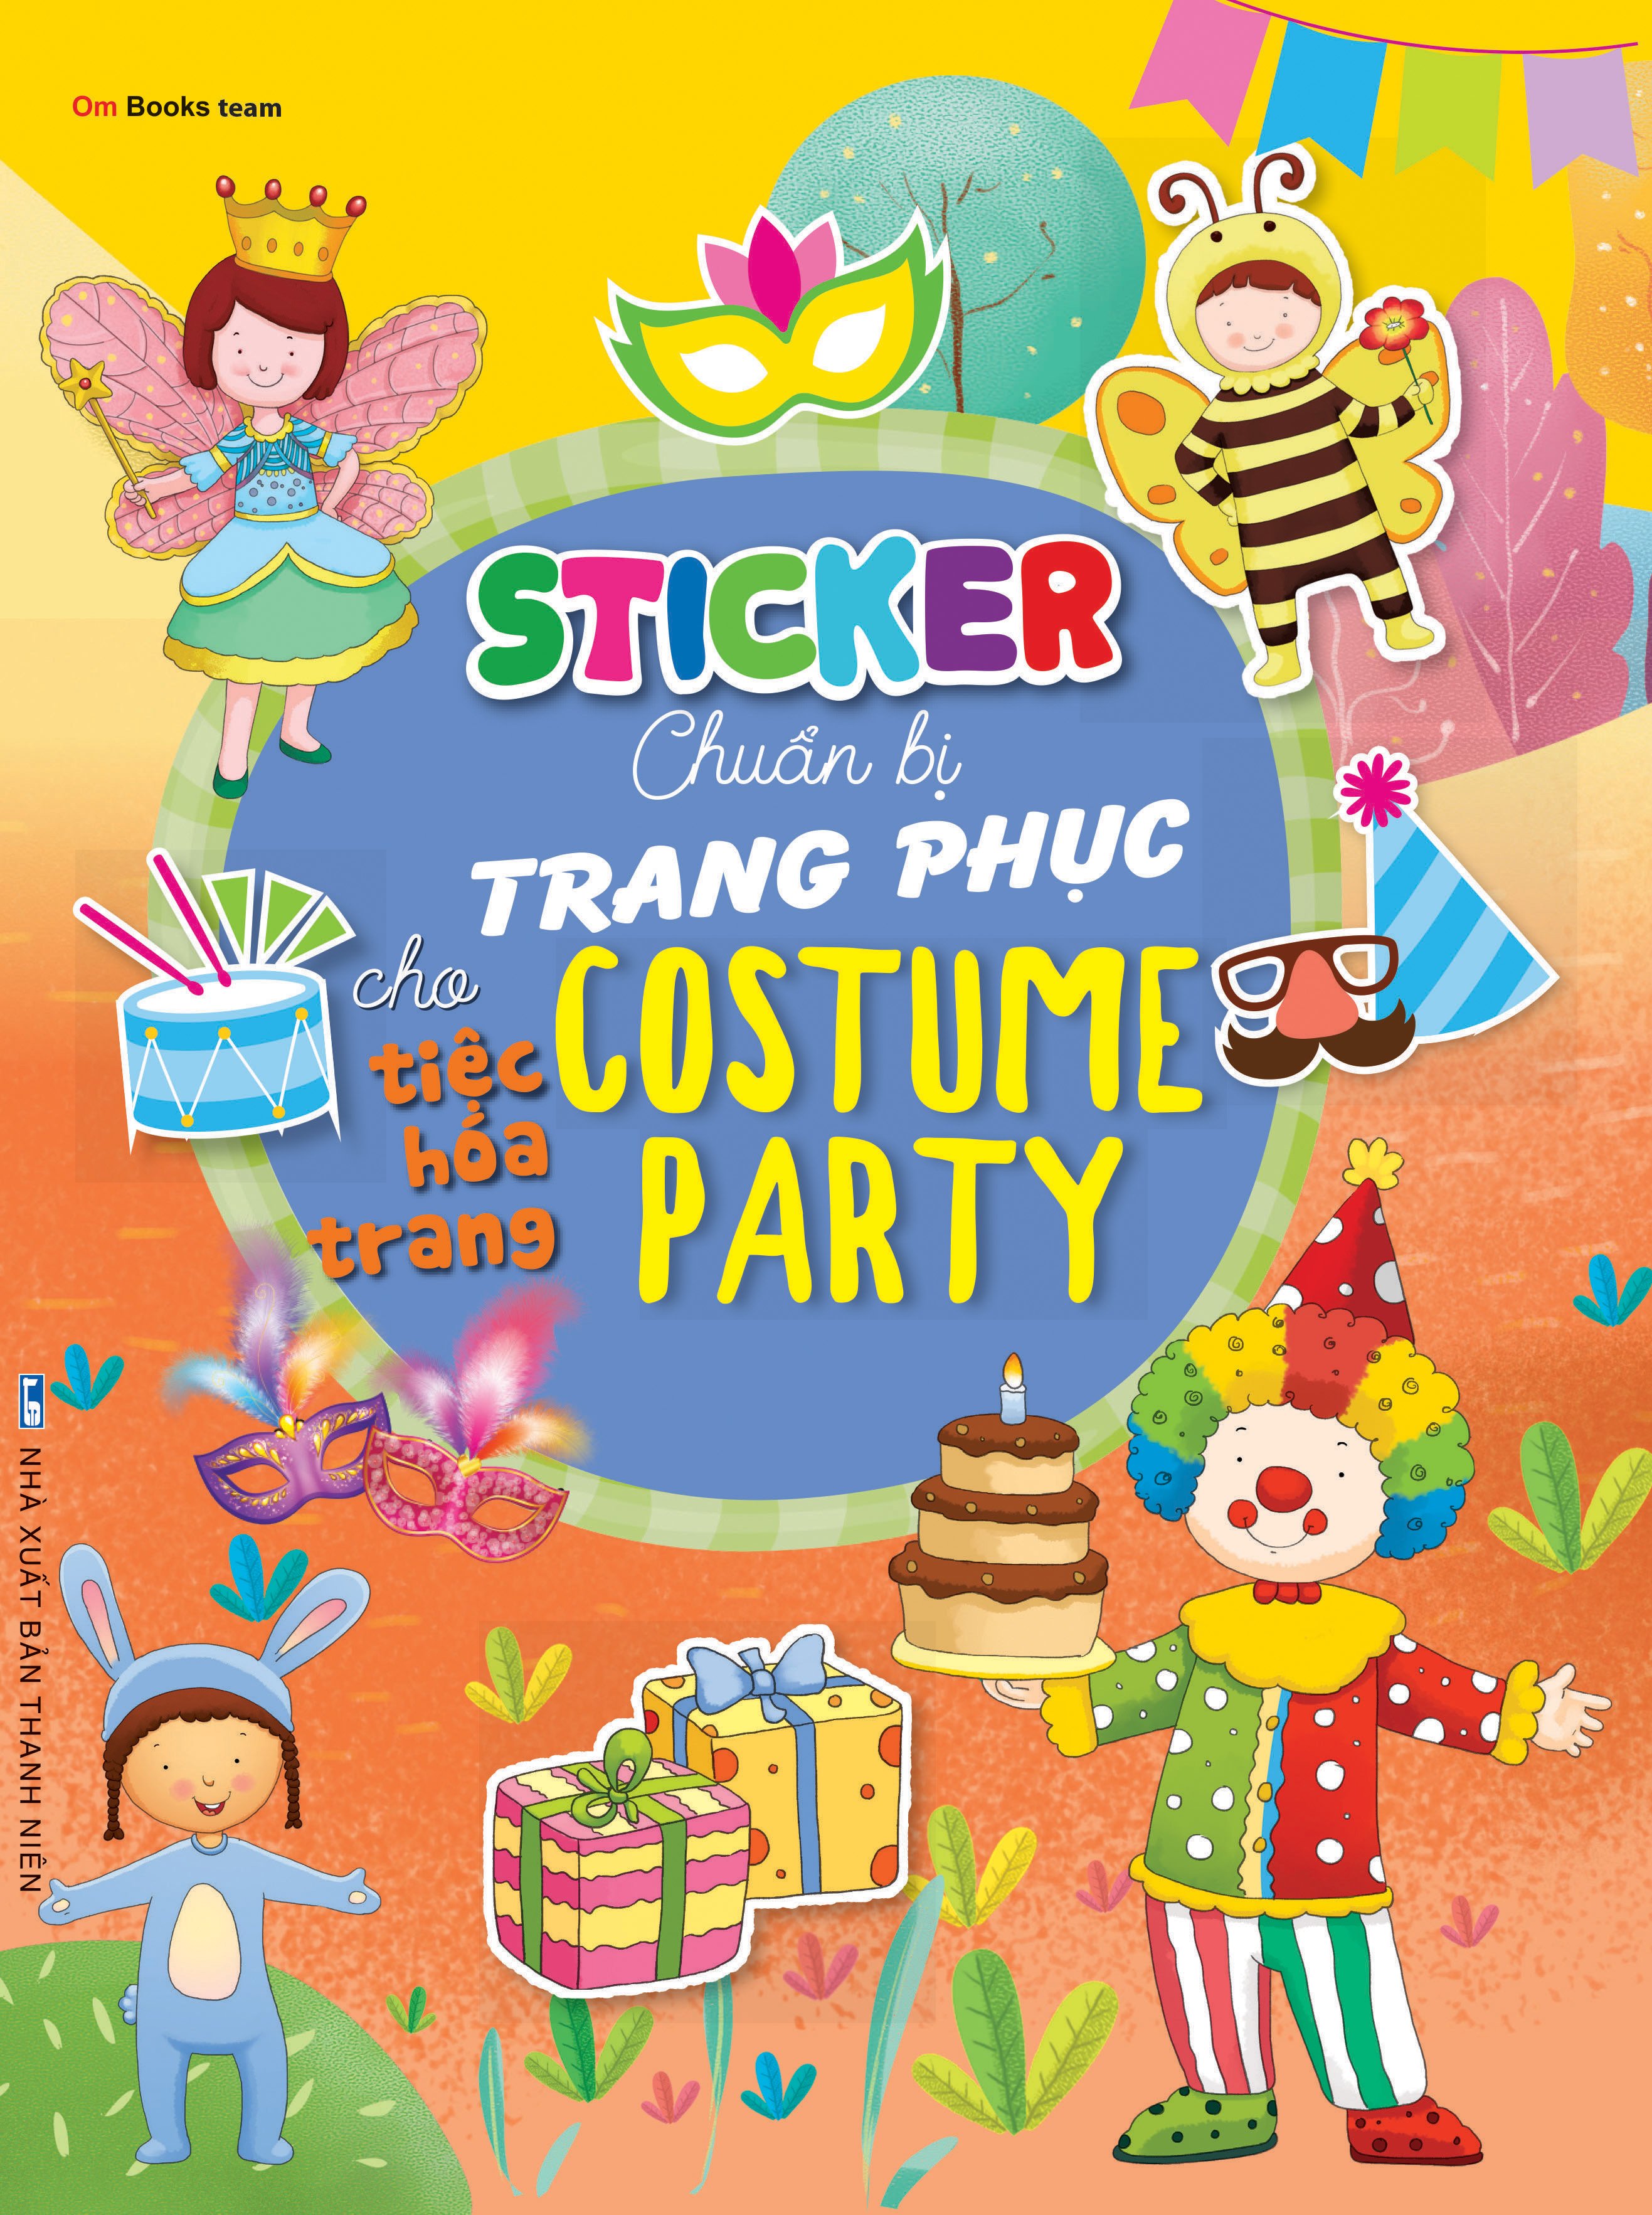 Sticker chuẩn bị trang phục cho tiệc hóa trang - Costume party (ND)